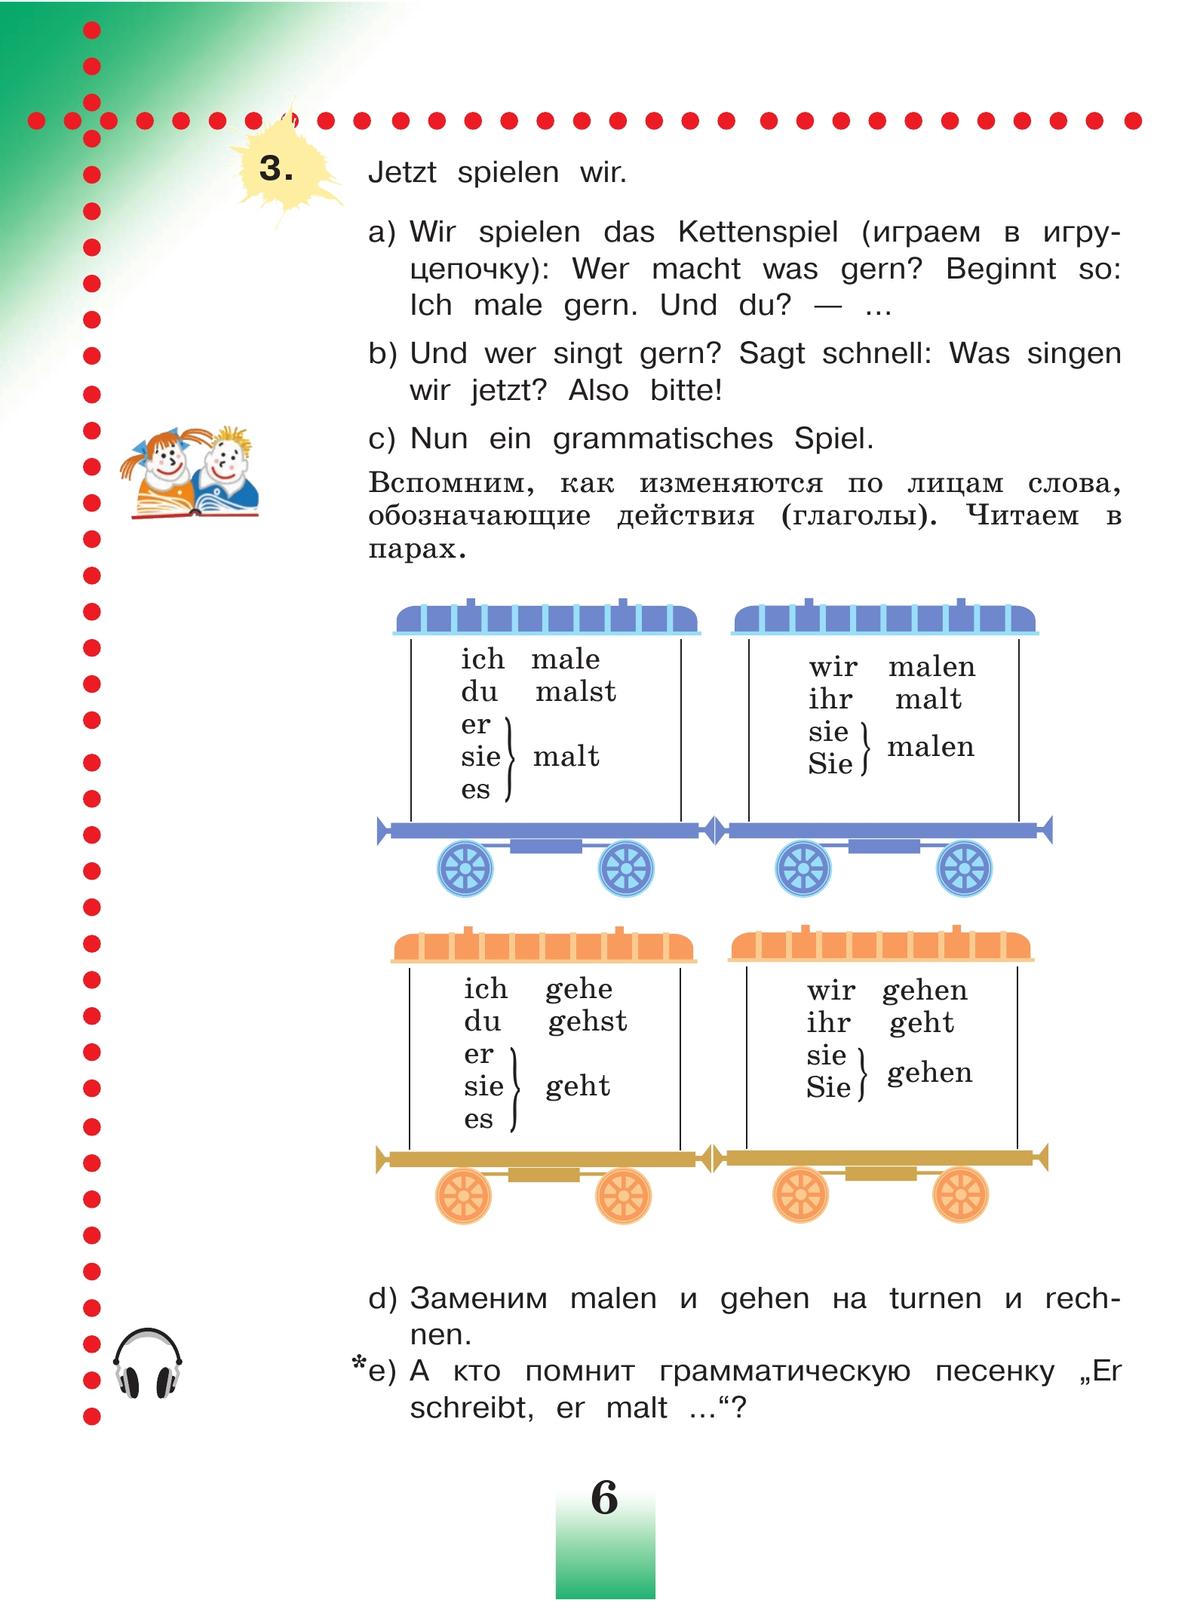 Немецкий язык. 4 класс. Учебник. В 2 ч. Часть 1 6